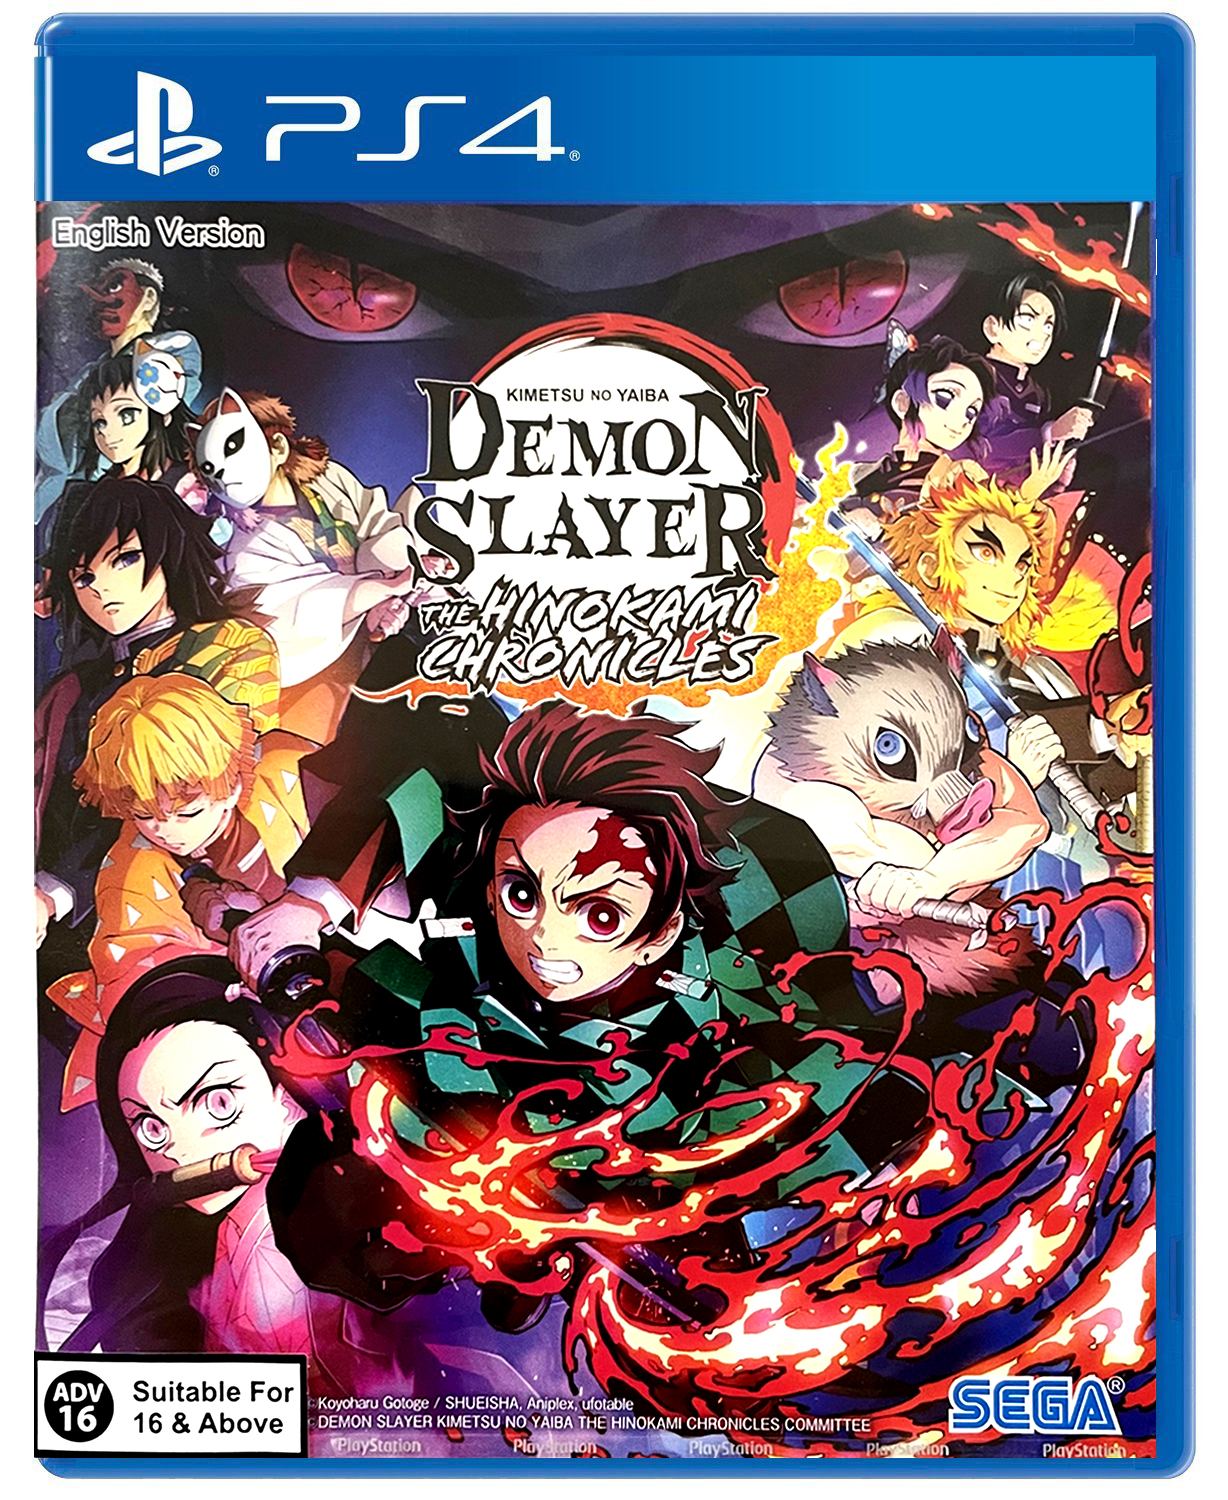 Demon Slayer - Kimetsu no Yaiba - vai ganhar um game para PS4 em